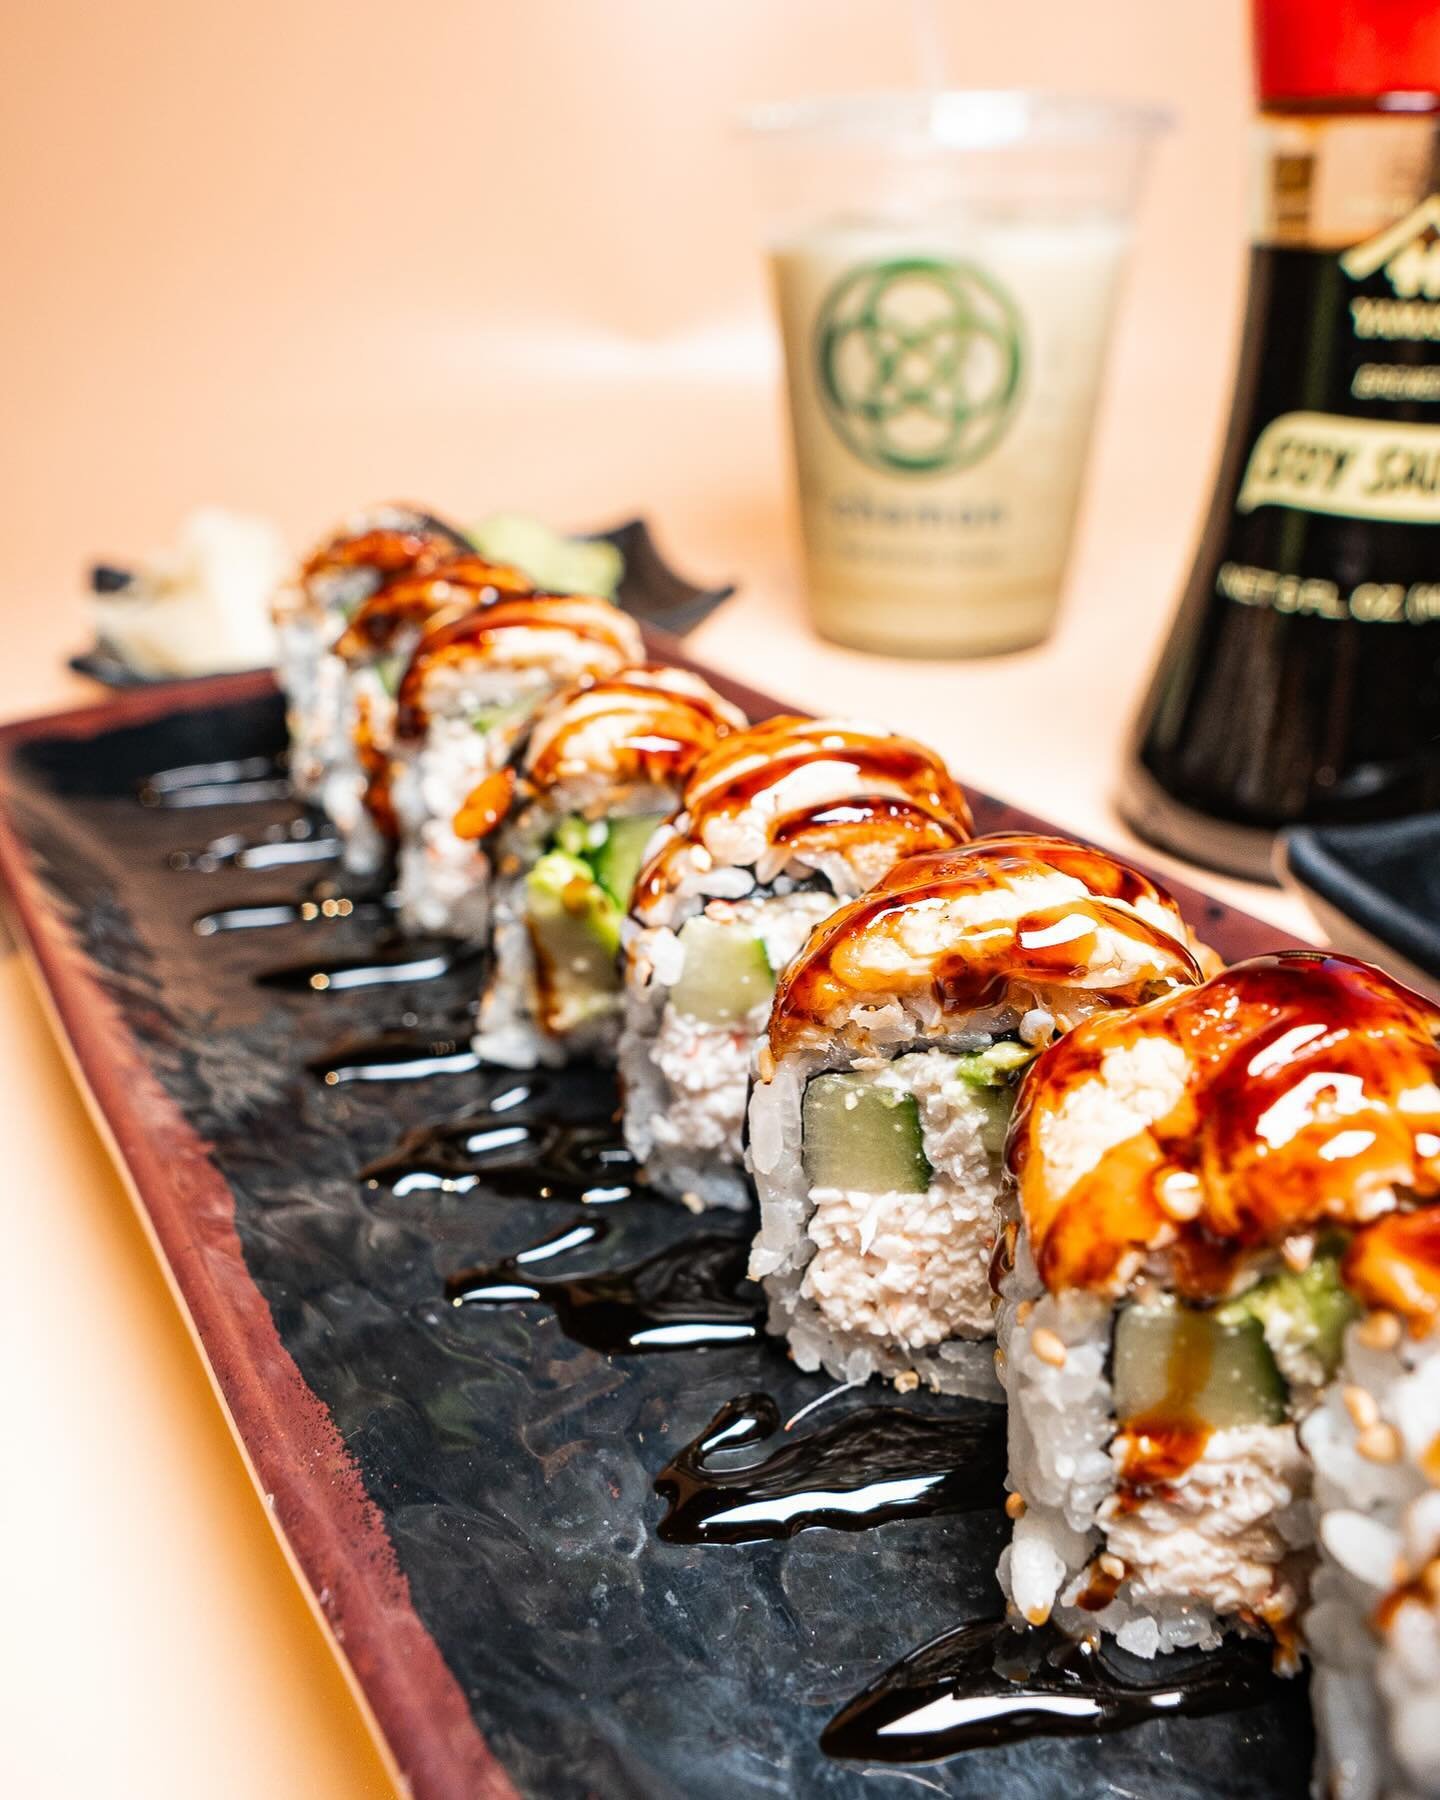 Nigiri means, where simplicity meets Japanese food perfection, one delicate bite at a time! Visit us today! #VegasEats 🍣✨ 

◾◽◾◽◾◽◾◽◾◽
🍣 𝗔𝗬𝗖𝗘 𝗦𝗨𝗦𝗛𝗜 𝗠𝗢𝗡 𝗠𝗔𝗥𝗬𝗟𝗔𝗡𝗗
⏰ ᴅᴀɪʟʏ: 12:00 ᴘᴍ - 11:00 ᴘᴍ
⏰ ʟᴀꜱᴛ ꜱᴇᴀᴛɪɴɢ ꜰᴏʀ ᴀʏᴄᴇ 10ᴘᴍ
⏰ ʟᴀꜱᴛᴏʀᴅ